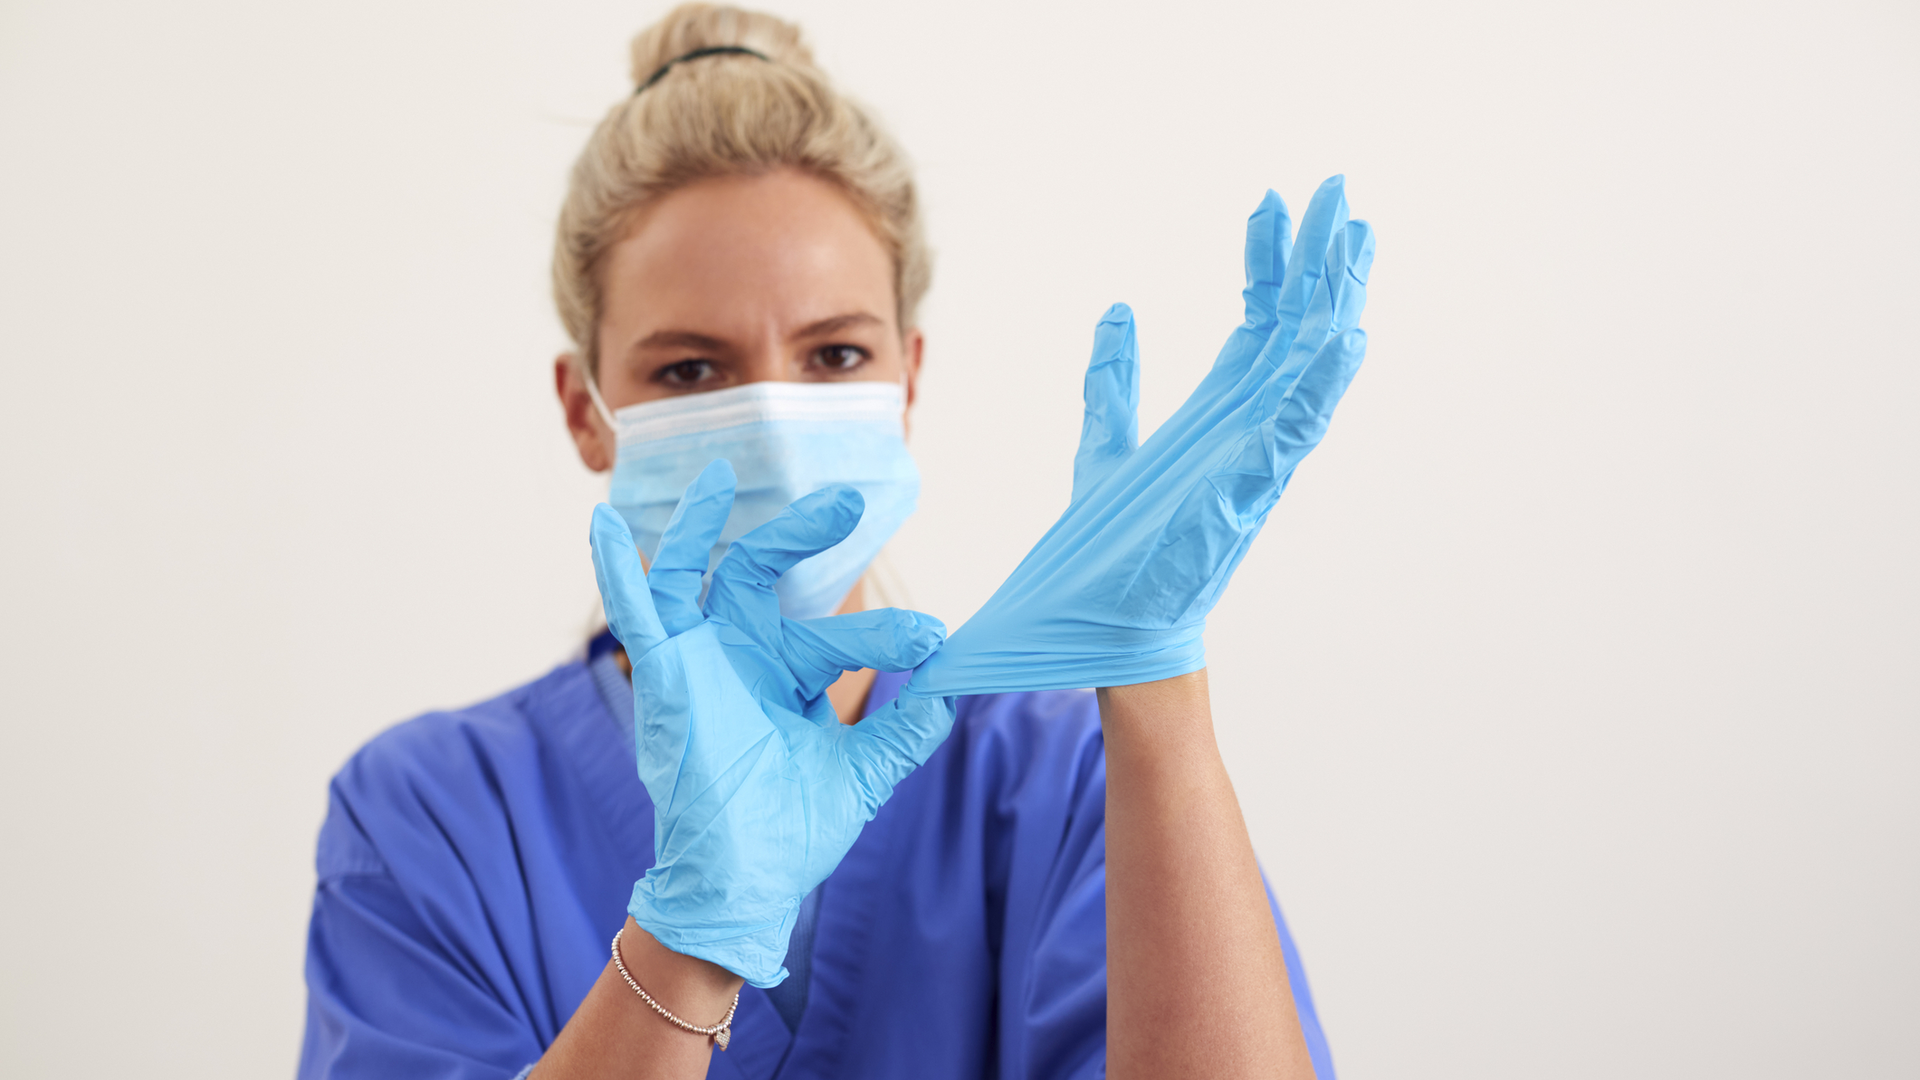 Надеть стерильные перчатки. Надевание нестерильных перчаток. PPE Gloves on people. Как одевать стерильные перчатки хирургу.